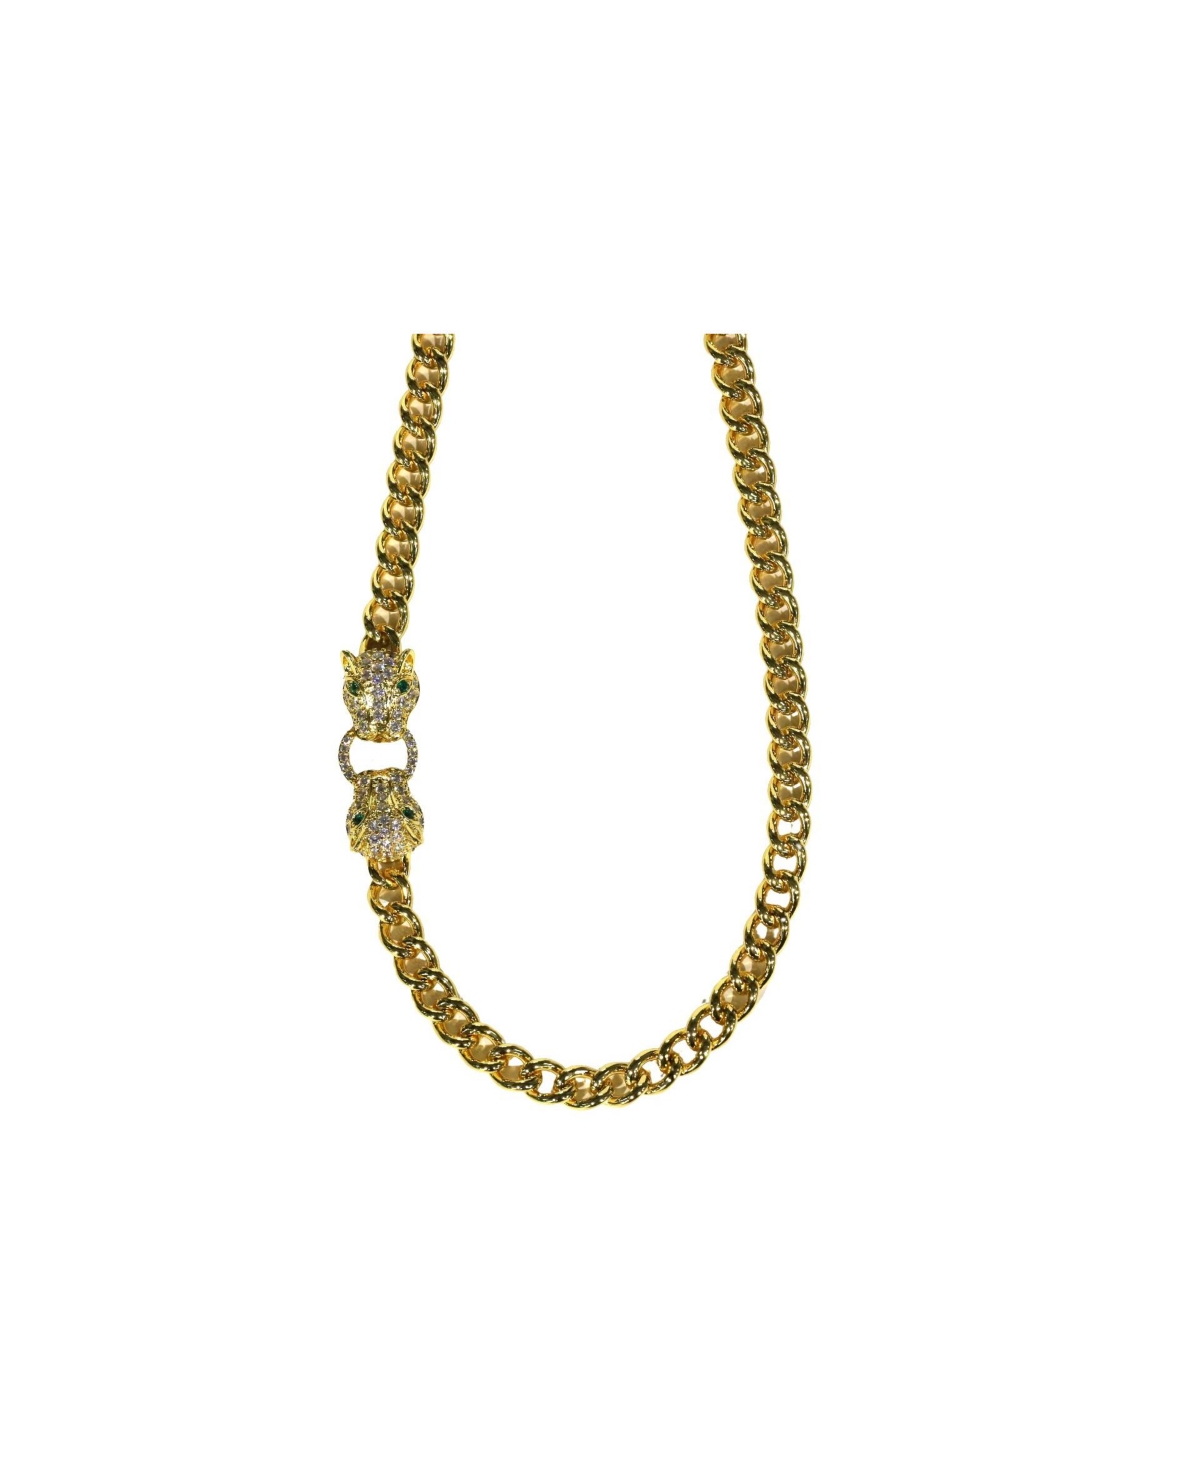 Jaguar Chain - Gold